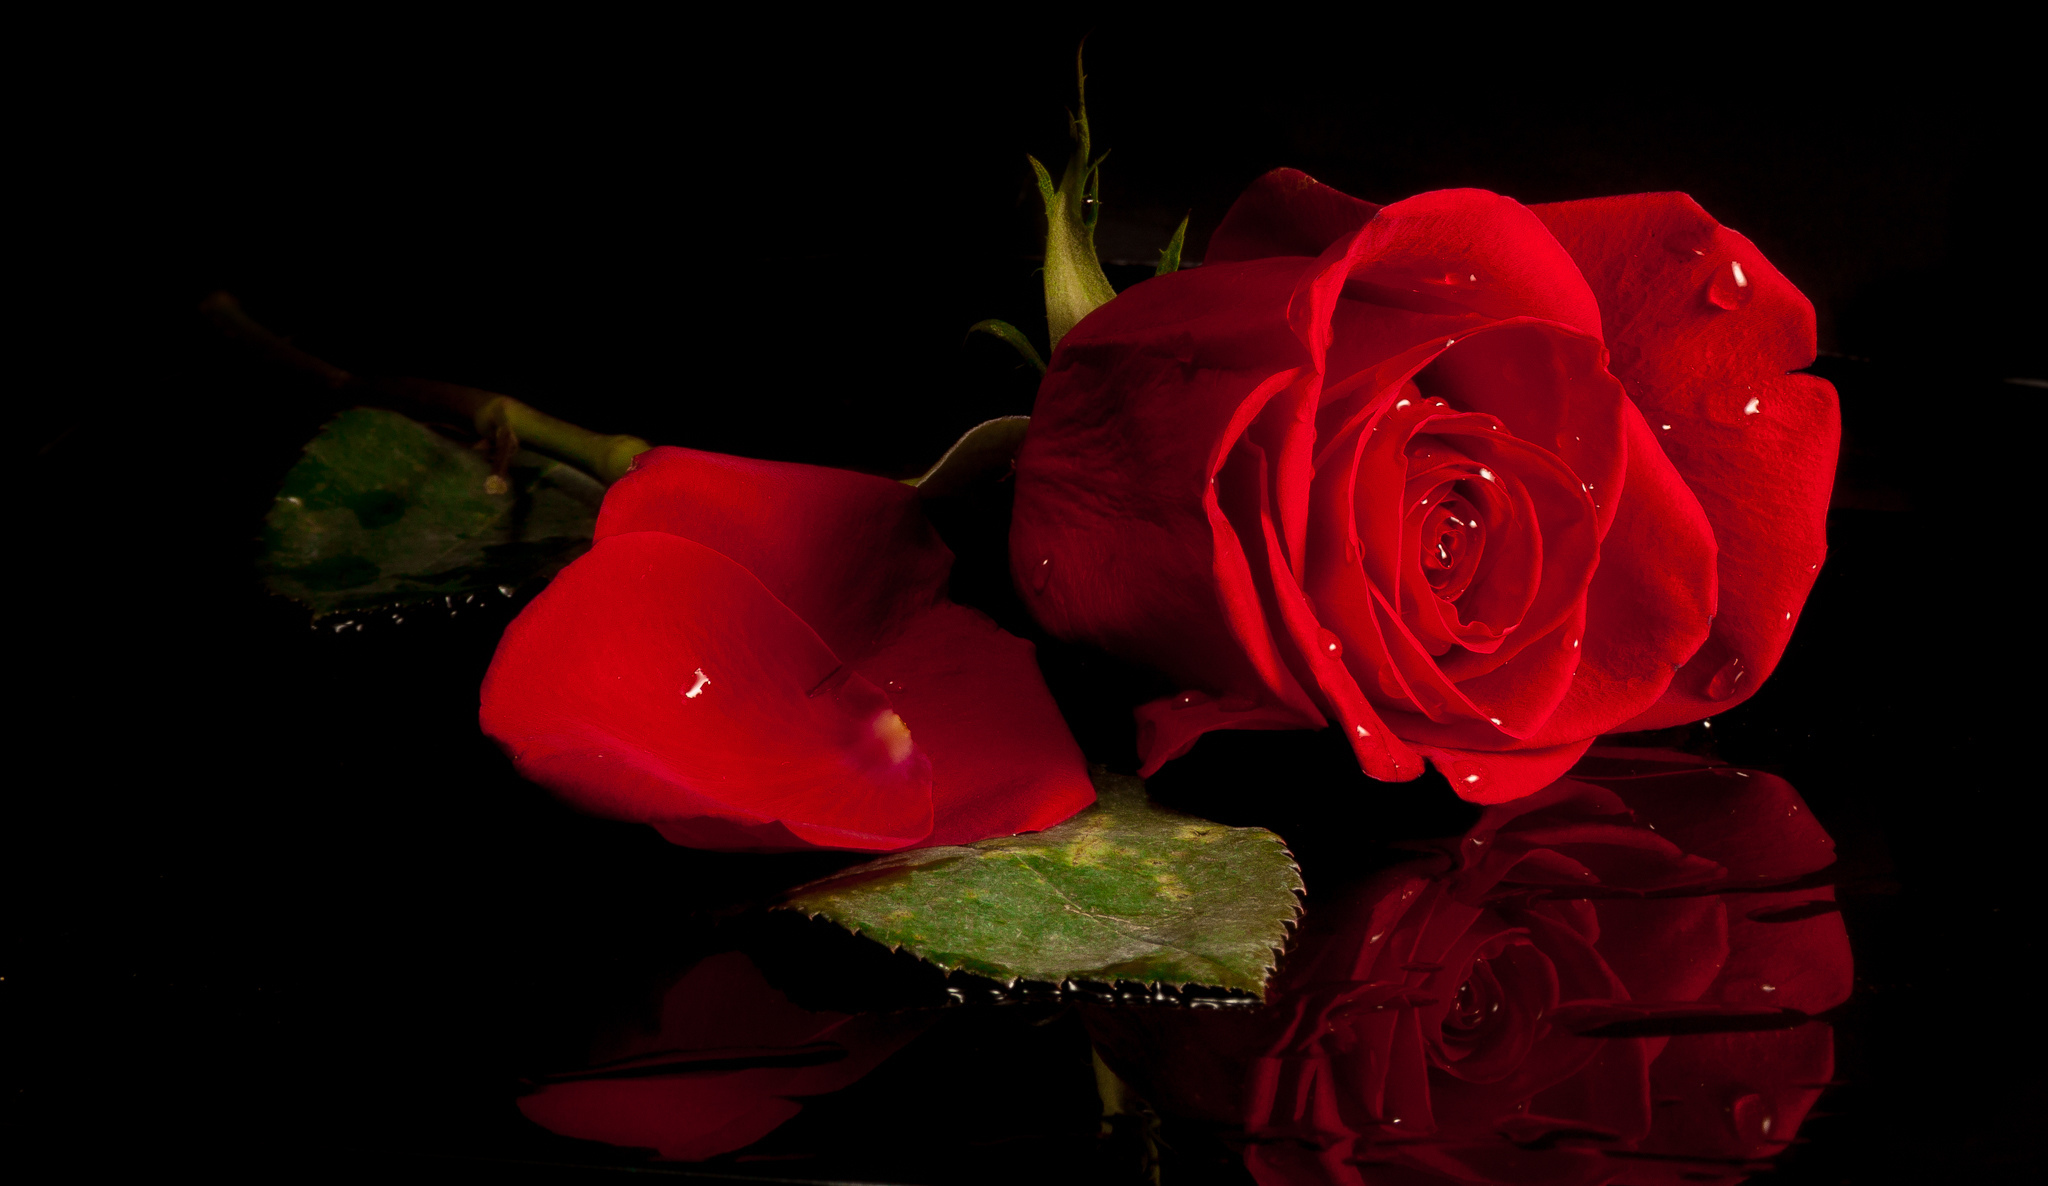 Скачать обои бесплатно Отражение, Цветок, Роза, Красная Роза, Красный Цветок, Земля/природа, Флауэрсы картинка на рабочий стол ПК